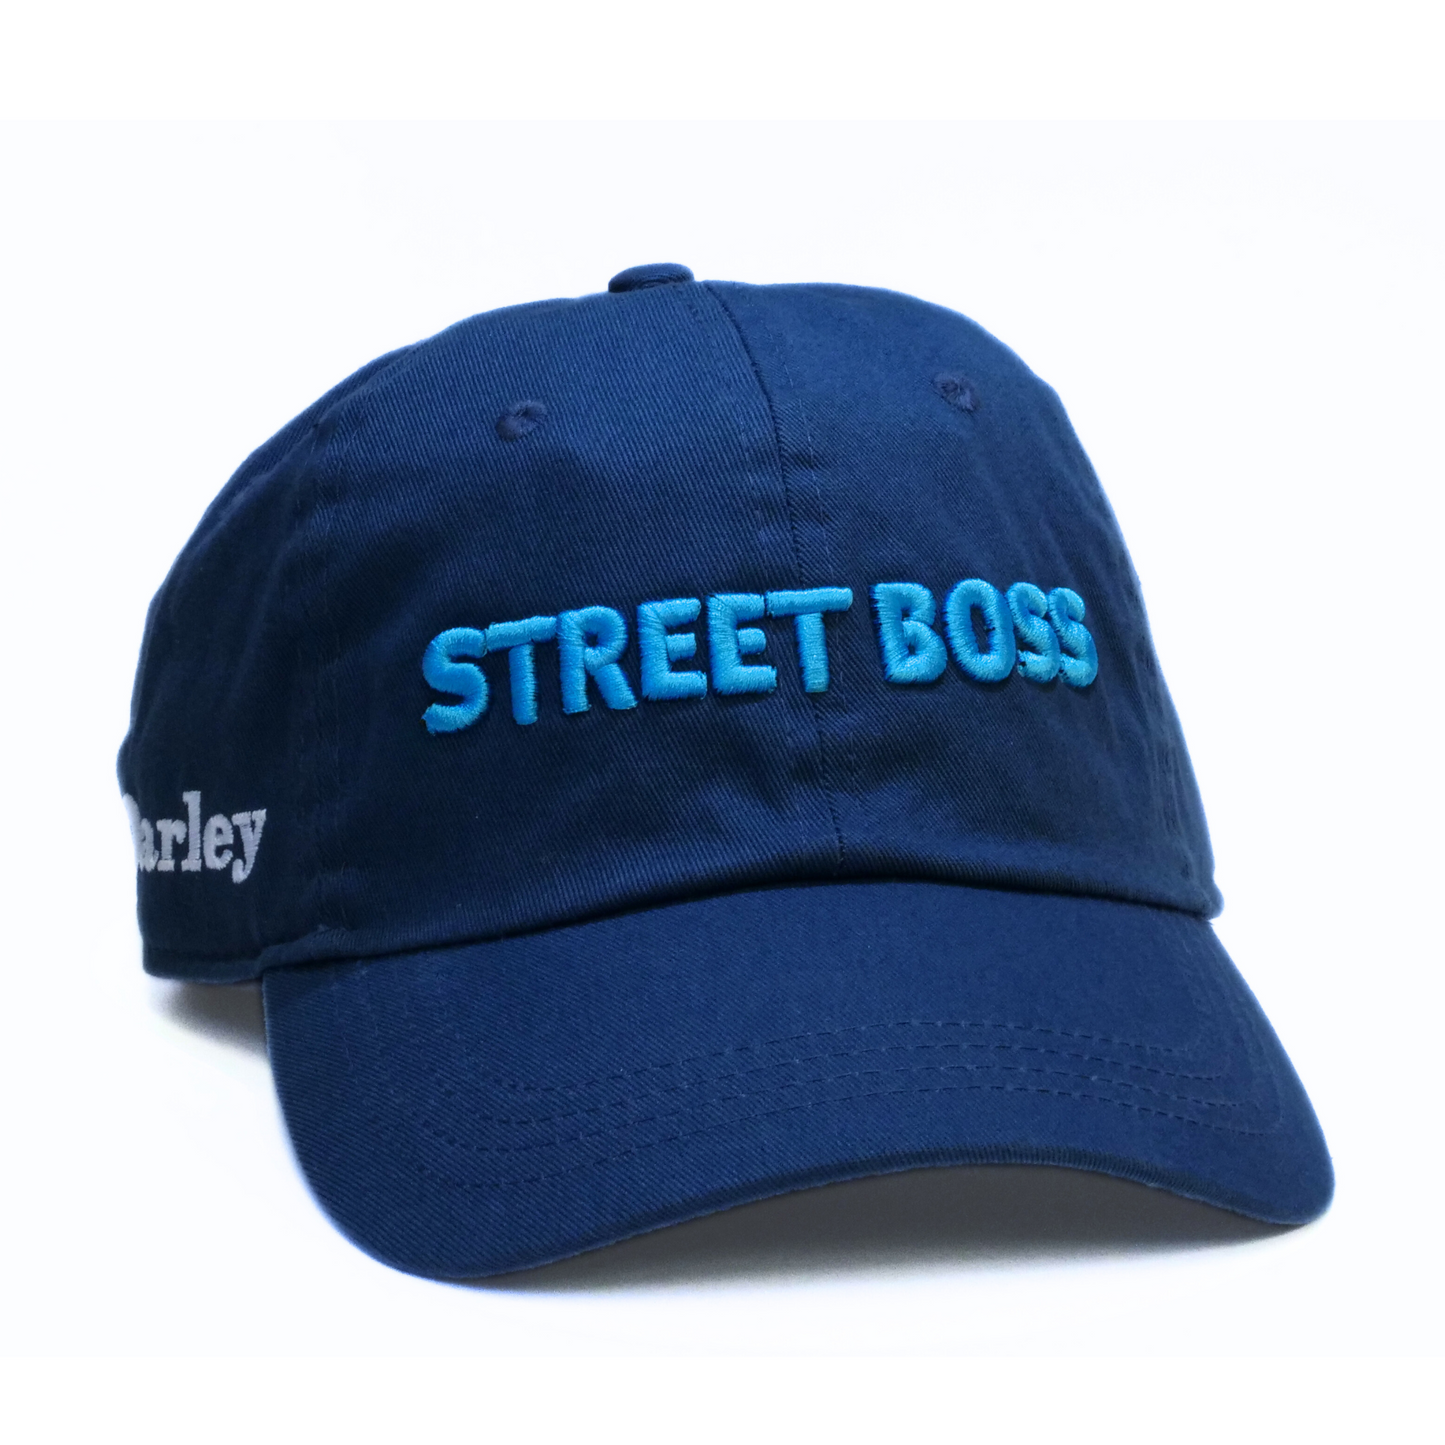 Street Boss Baseball Cap - Darley